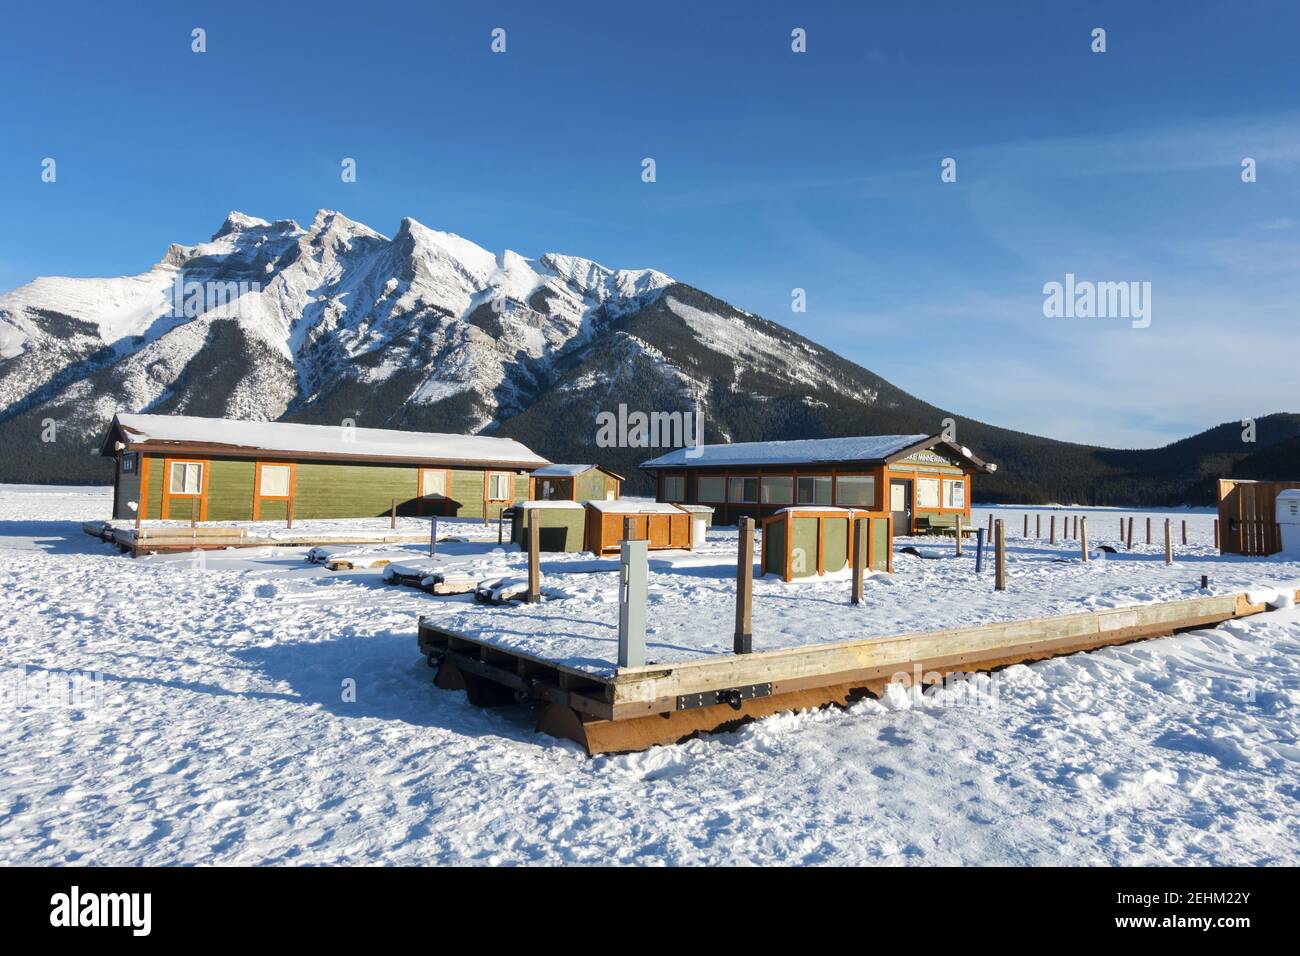 Croisière sur le lac Minnewanka, quai flottant et billet fermé Bureau des ventes avec le parc national Snowy Mountain of Banff on Horizon Banque D'Images